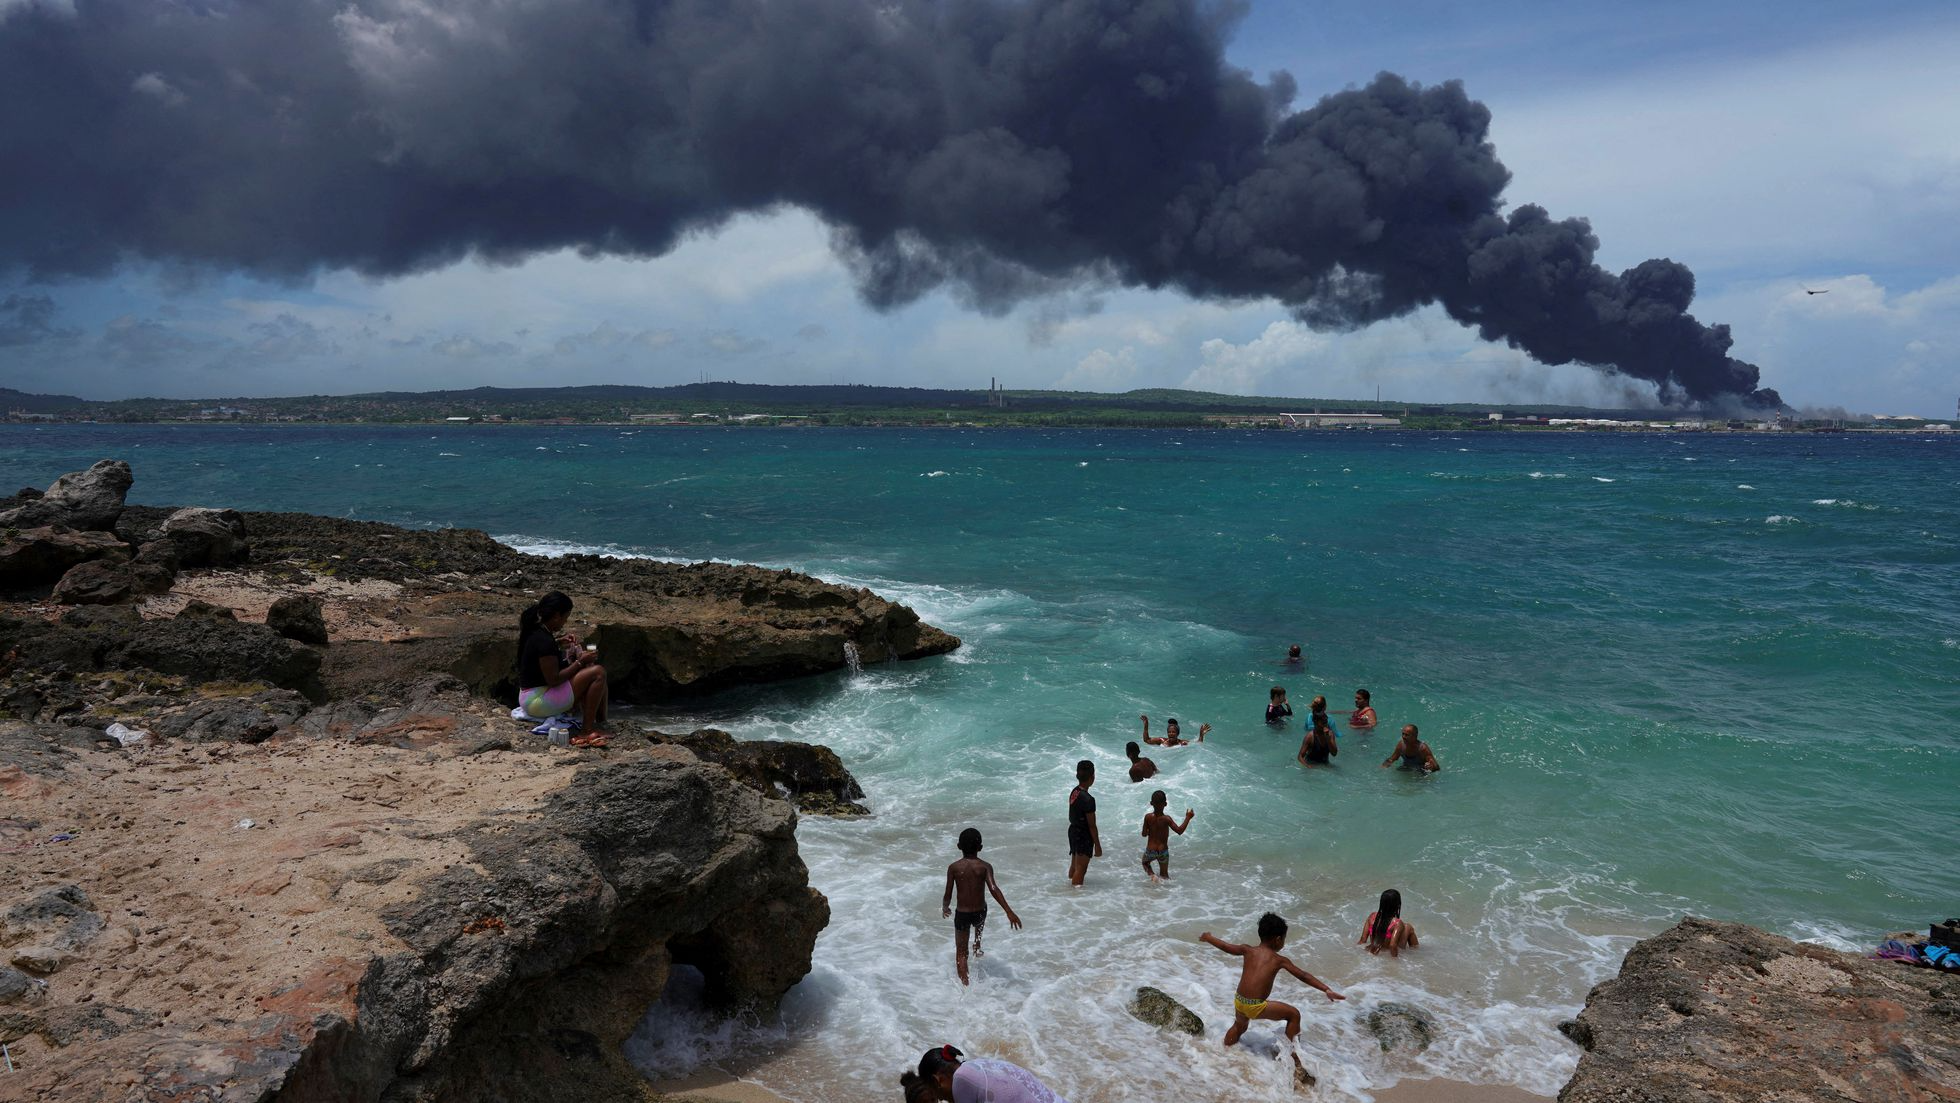 El fuego se expande en la ciudad de Matanzas, ubicada a 90 kilómetros de La Habana. Foto gentileza. 